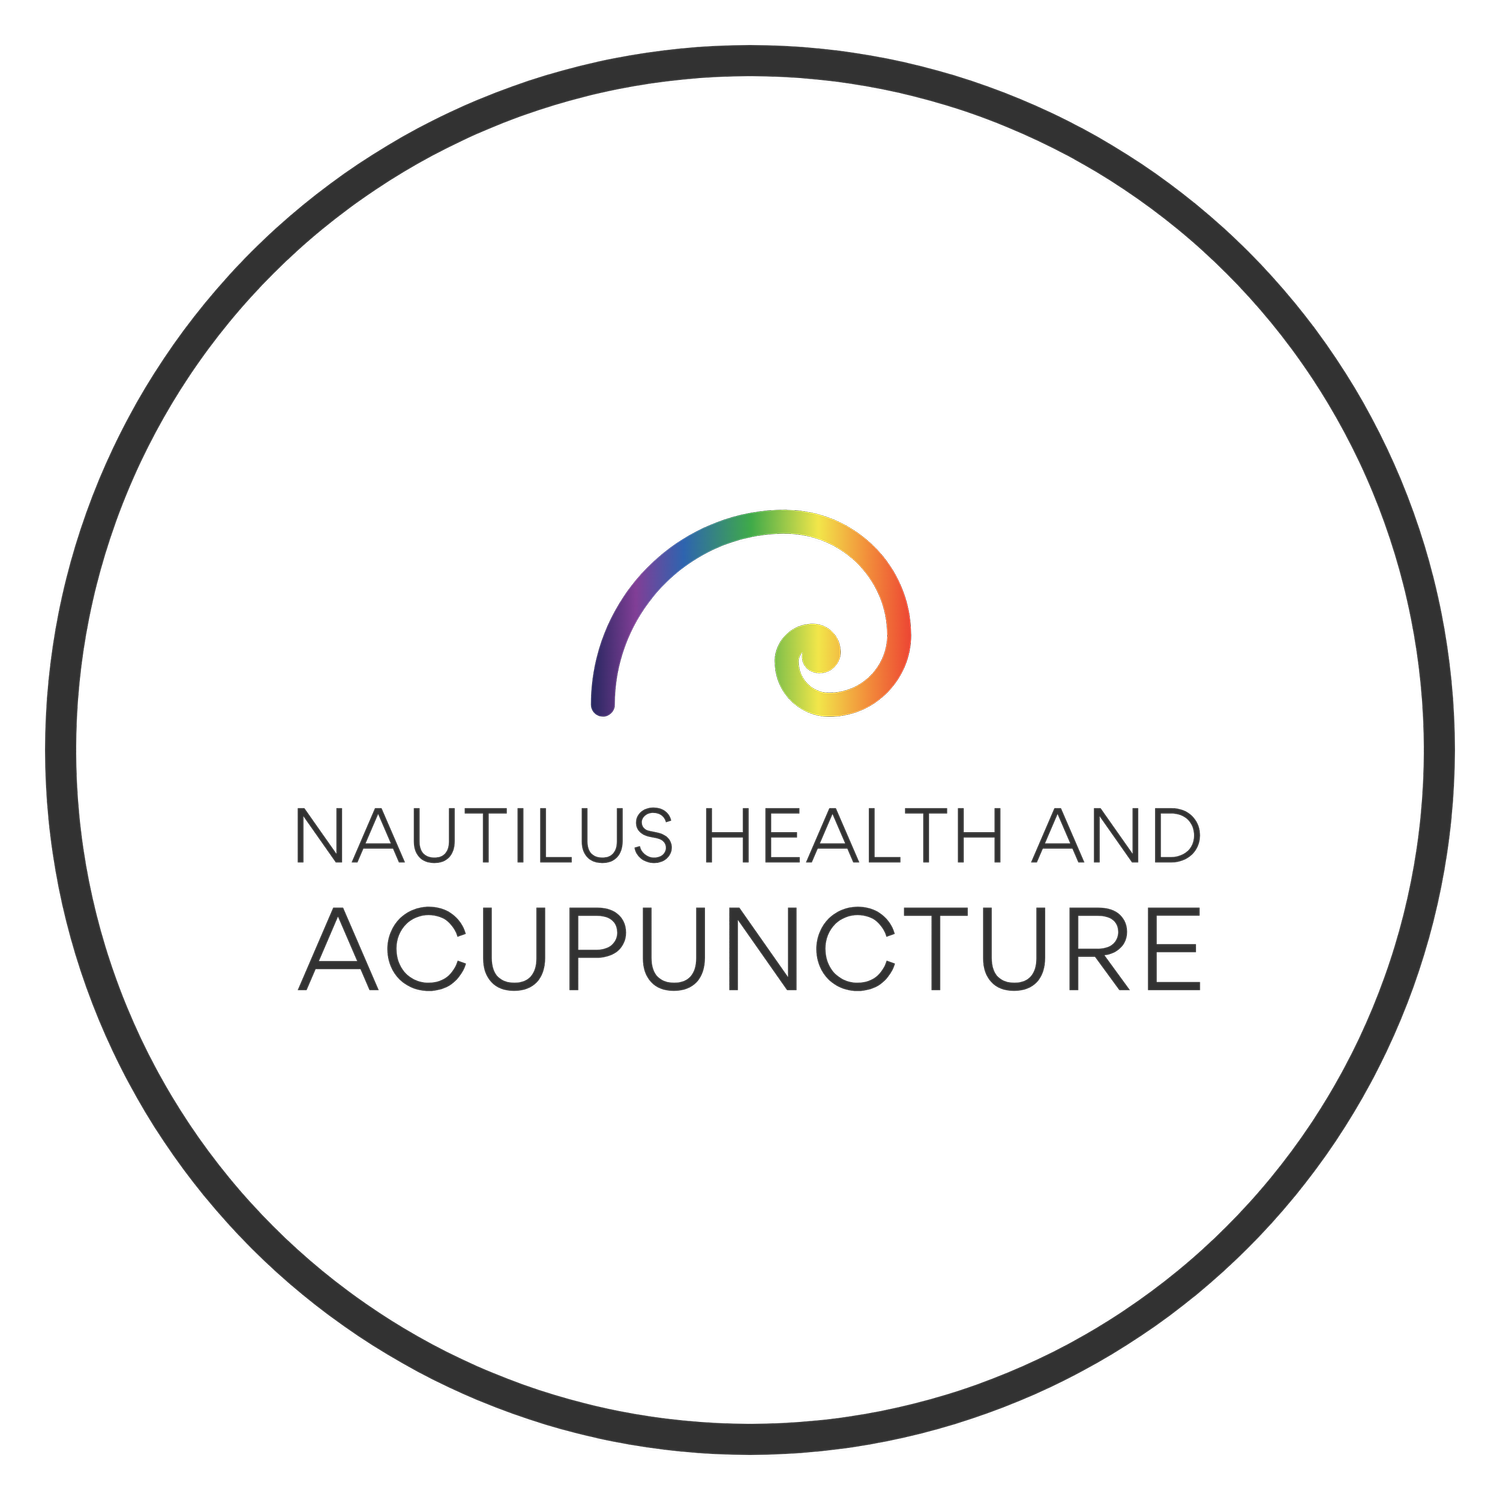 Nautilus Health and Acupuncture